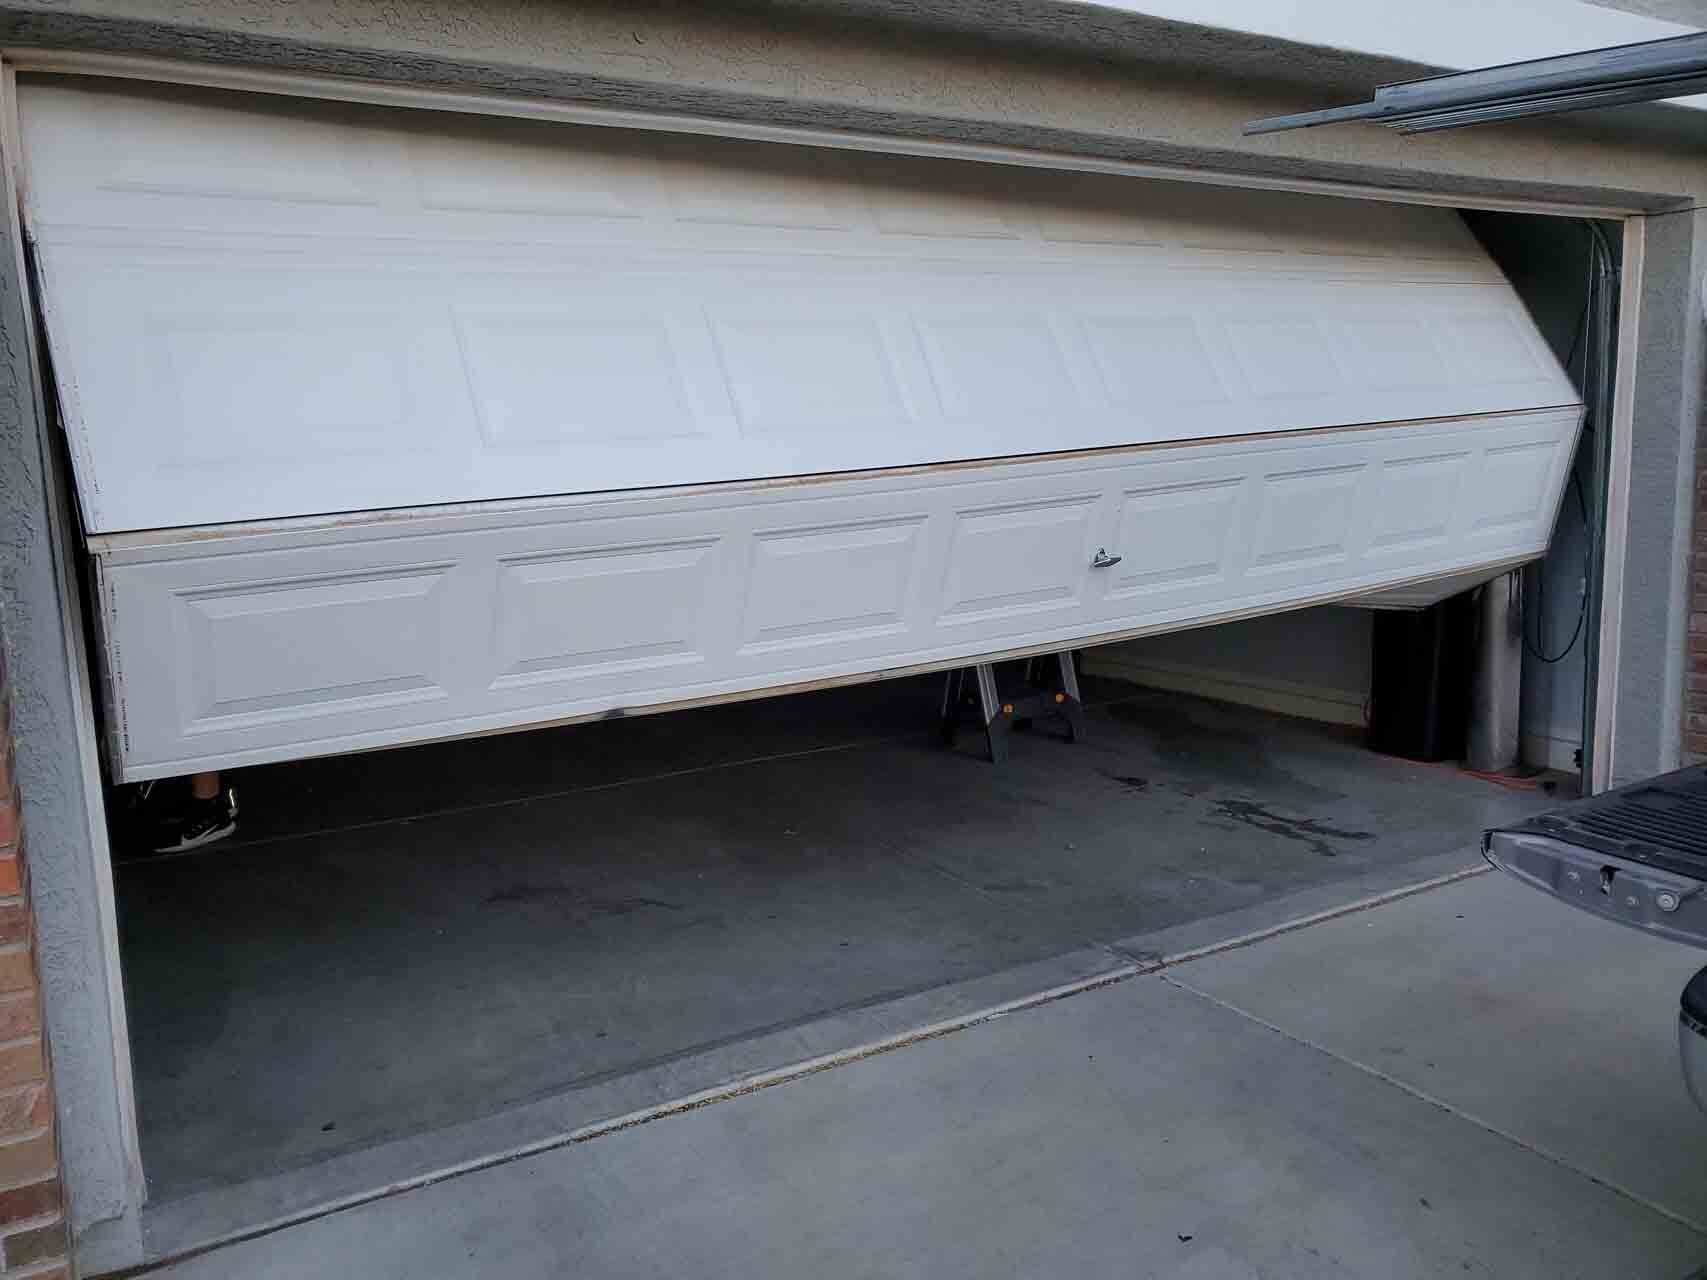 Sleek and modern Avondale garage door installation in progress.